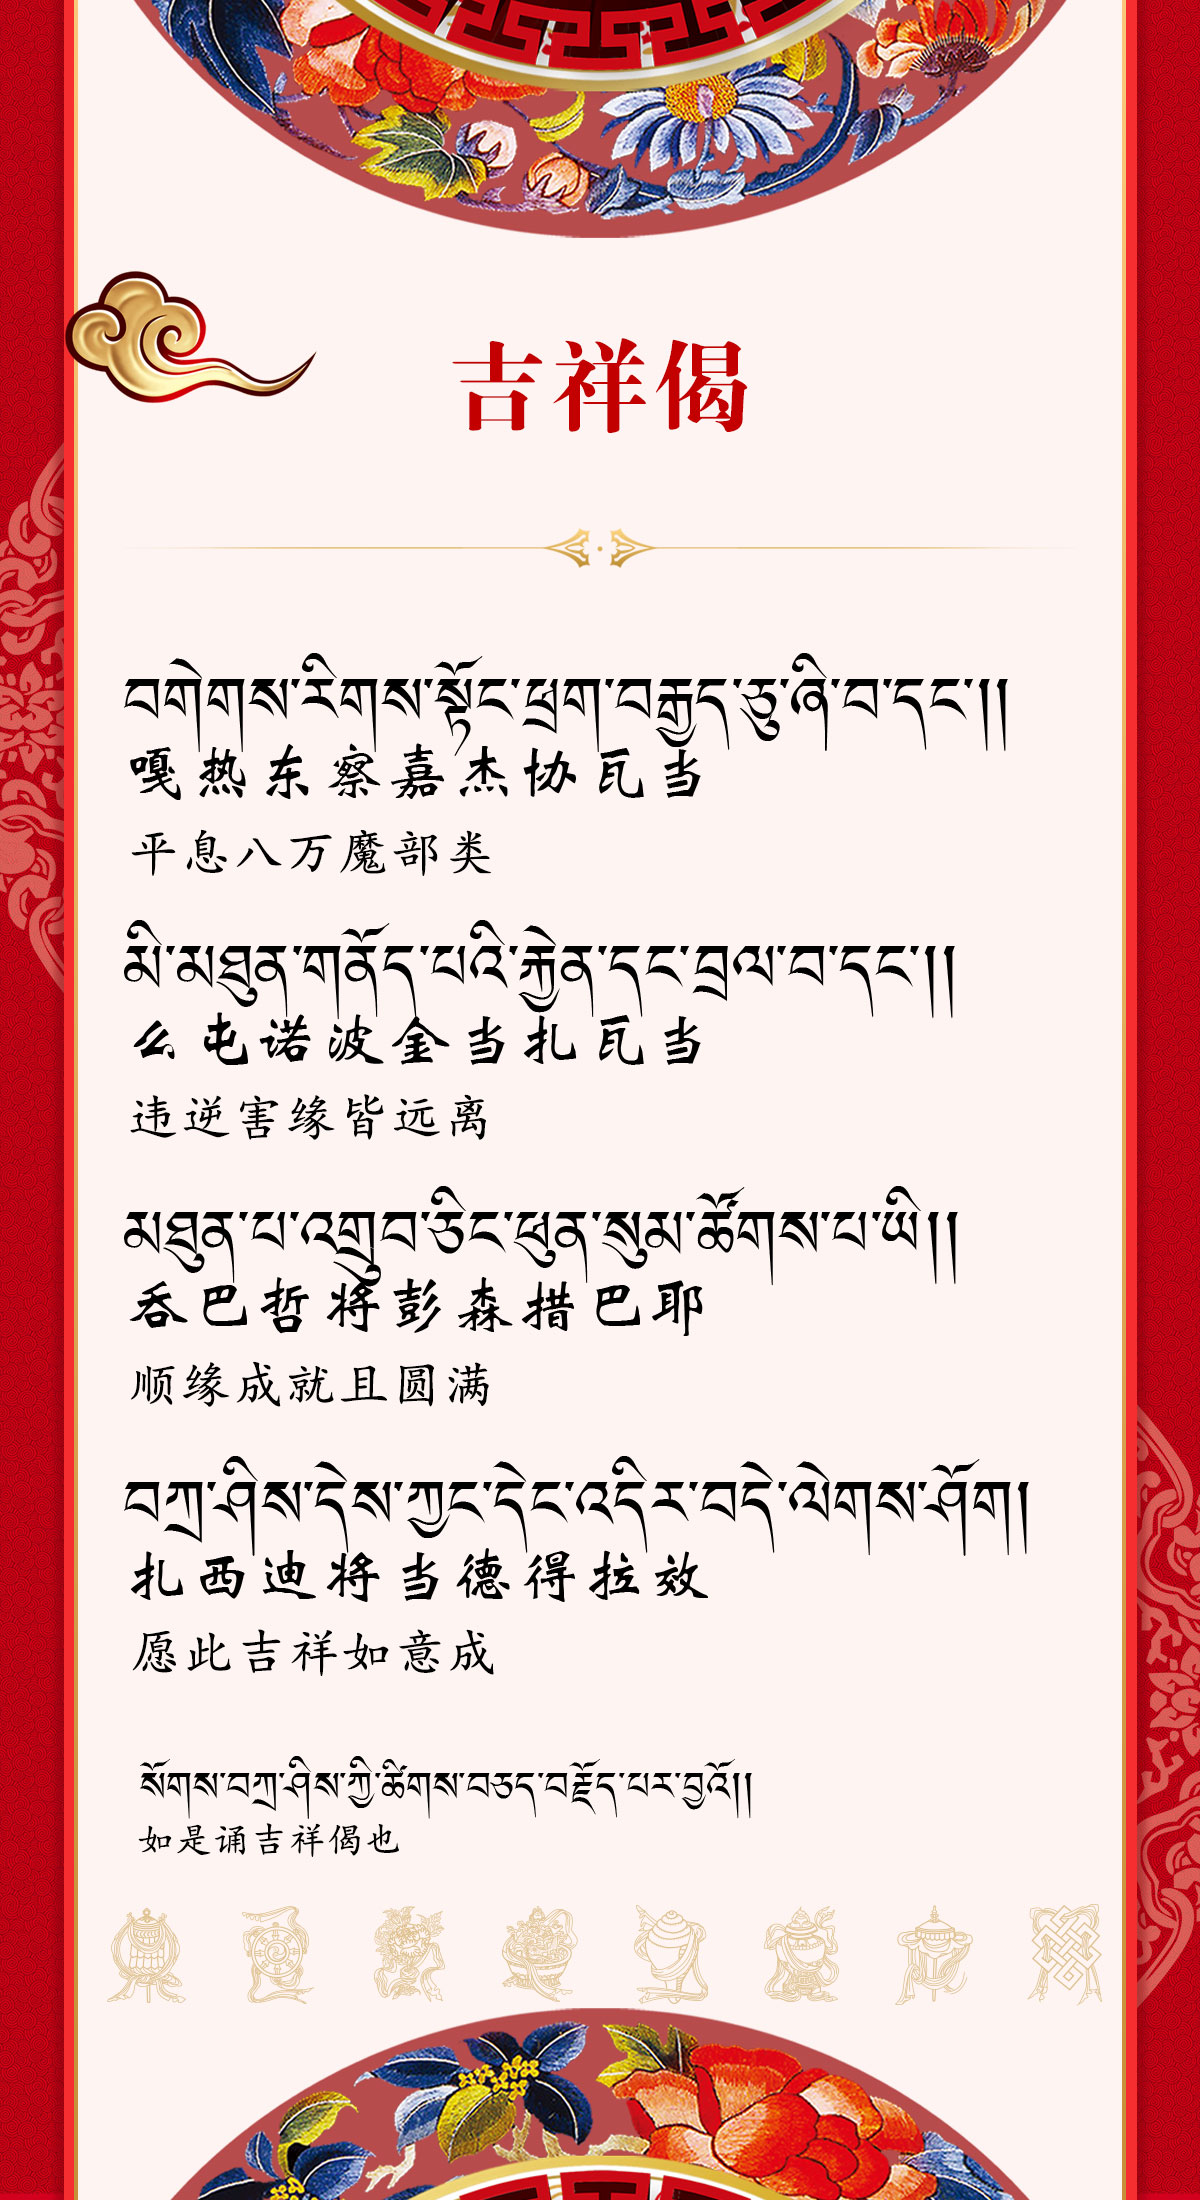 藏语祝福语图片